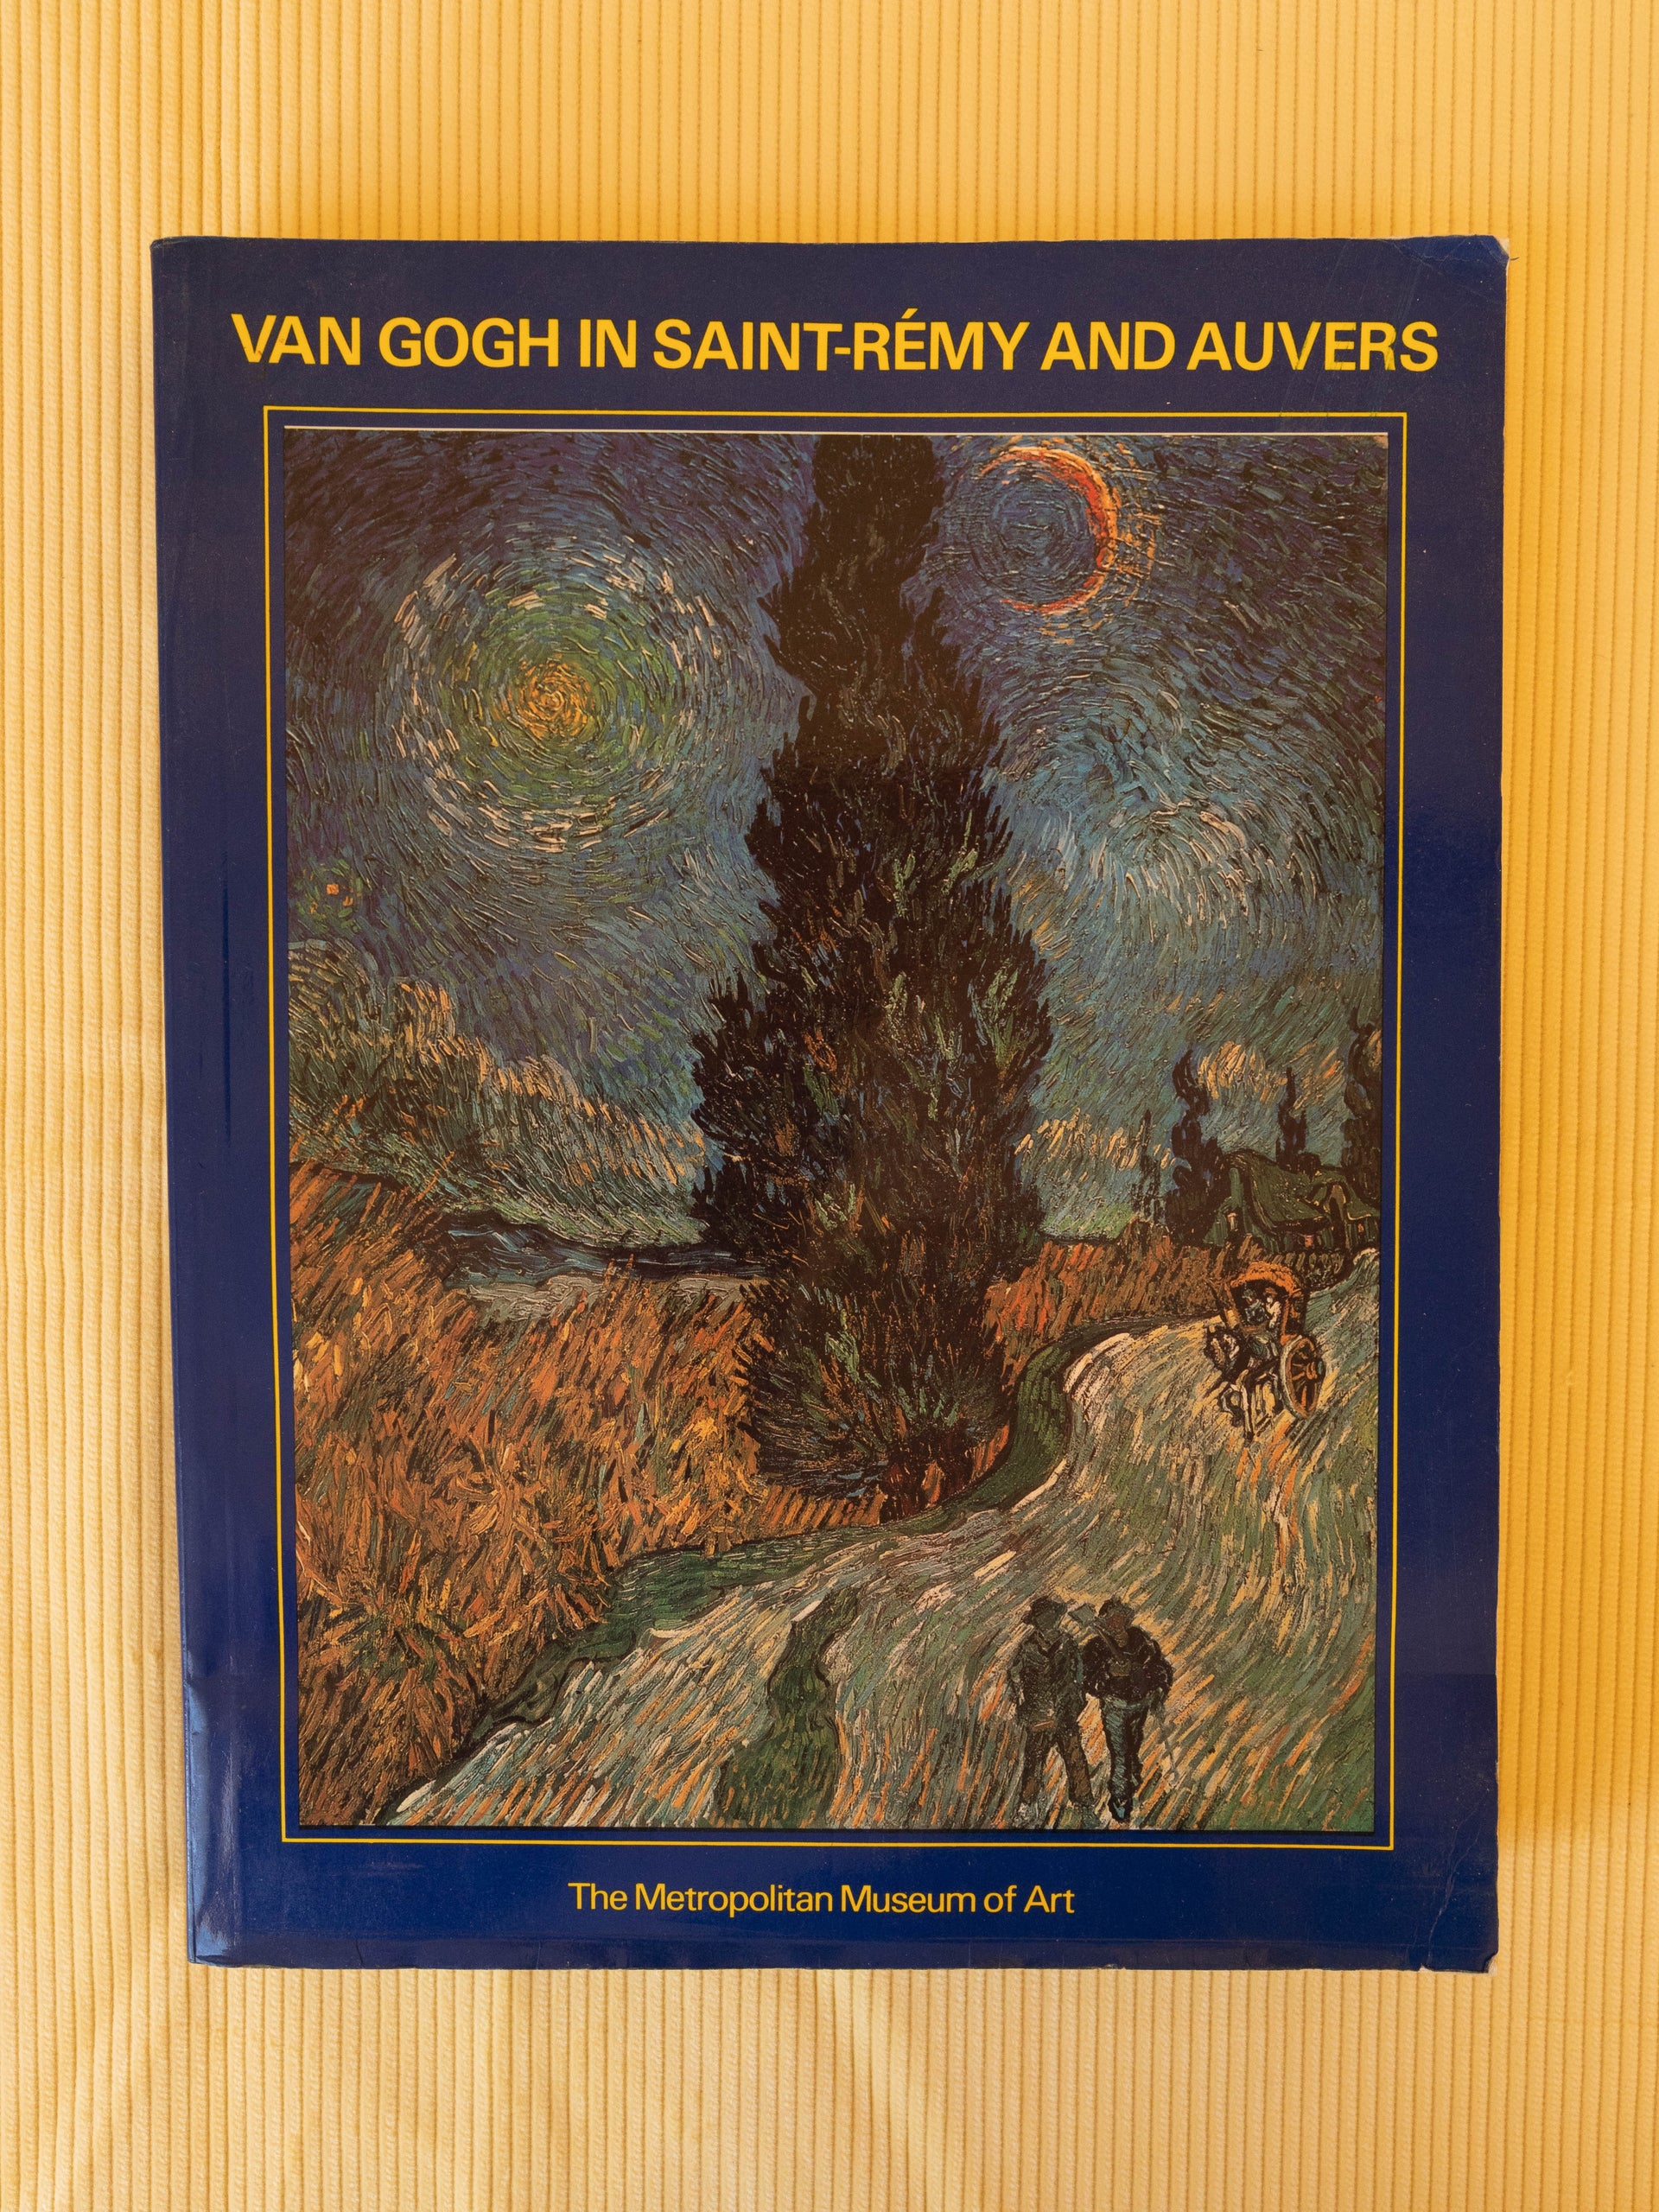 Van Gogh in Saint-Rémy and Auvers